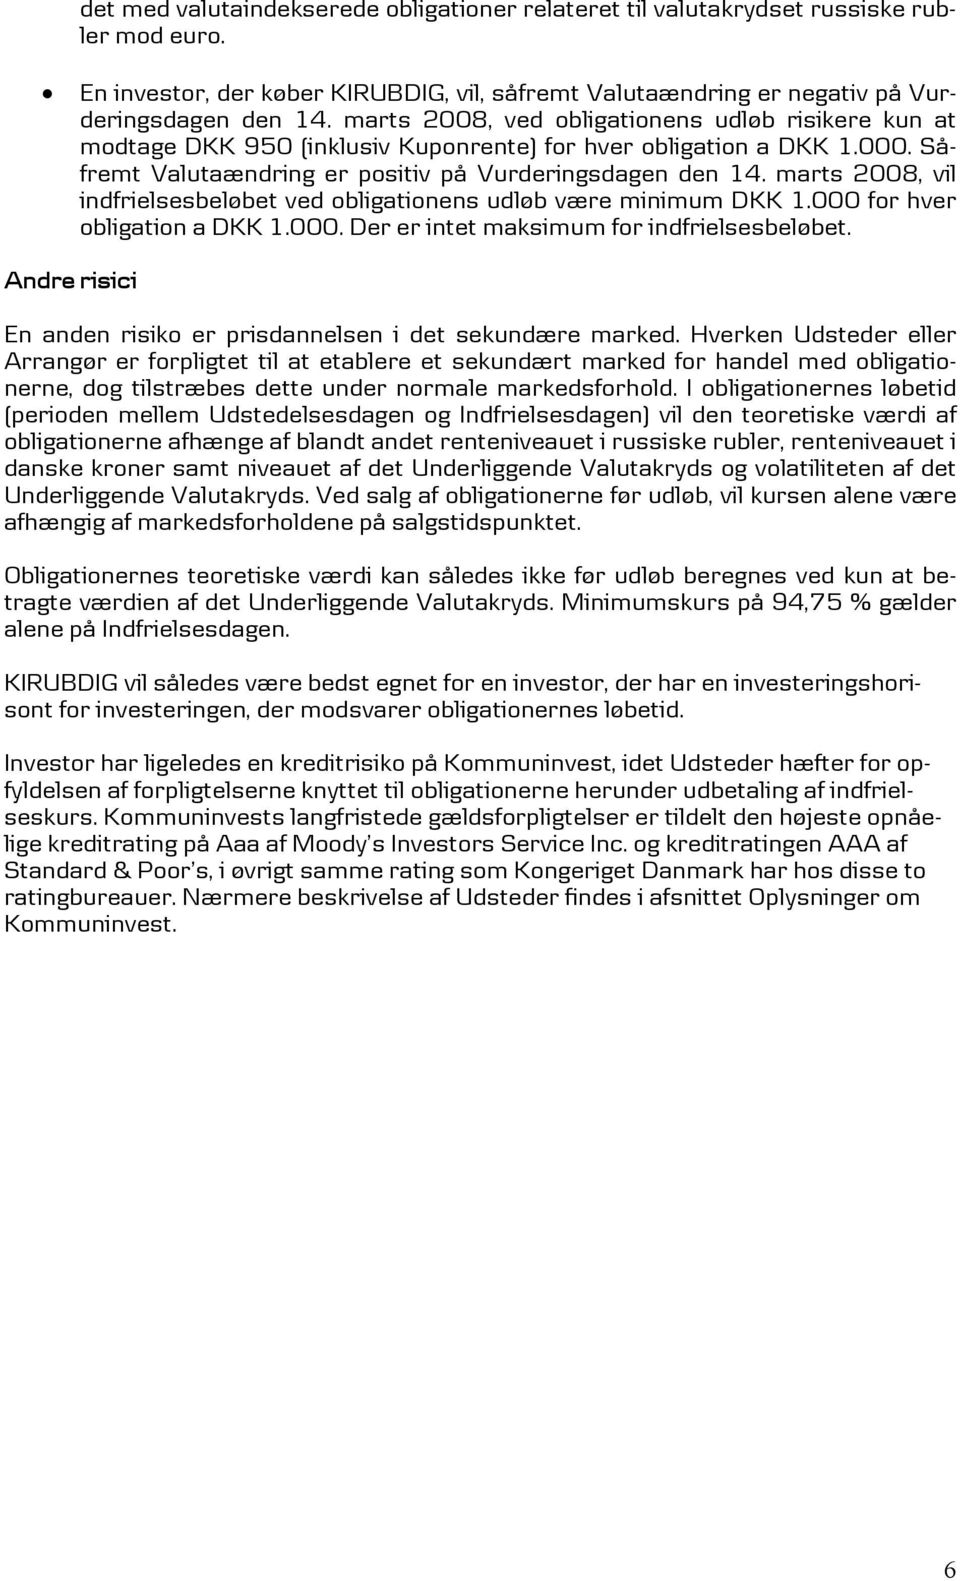 marts 2008, vil indfrielsesbeløbet ved obligationens udløb være minimum DKK 1.000 for hver obligation a DKK 1.000. Der er intet maksimum for indfrielsesbeløbet.